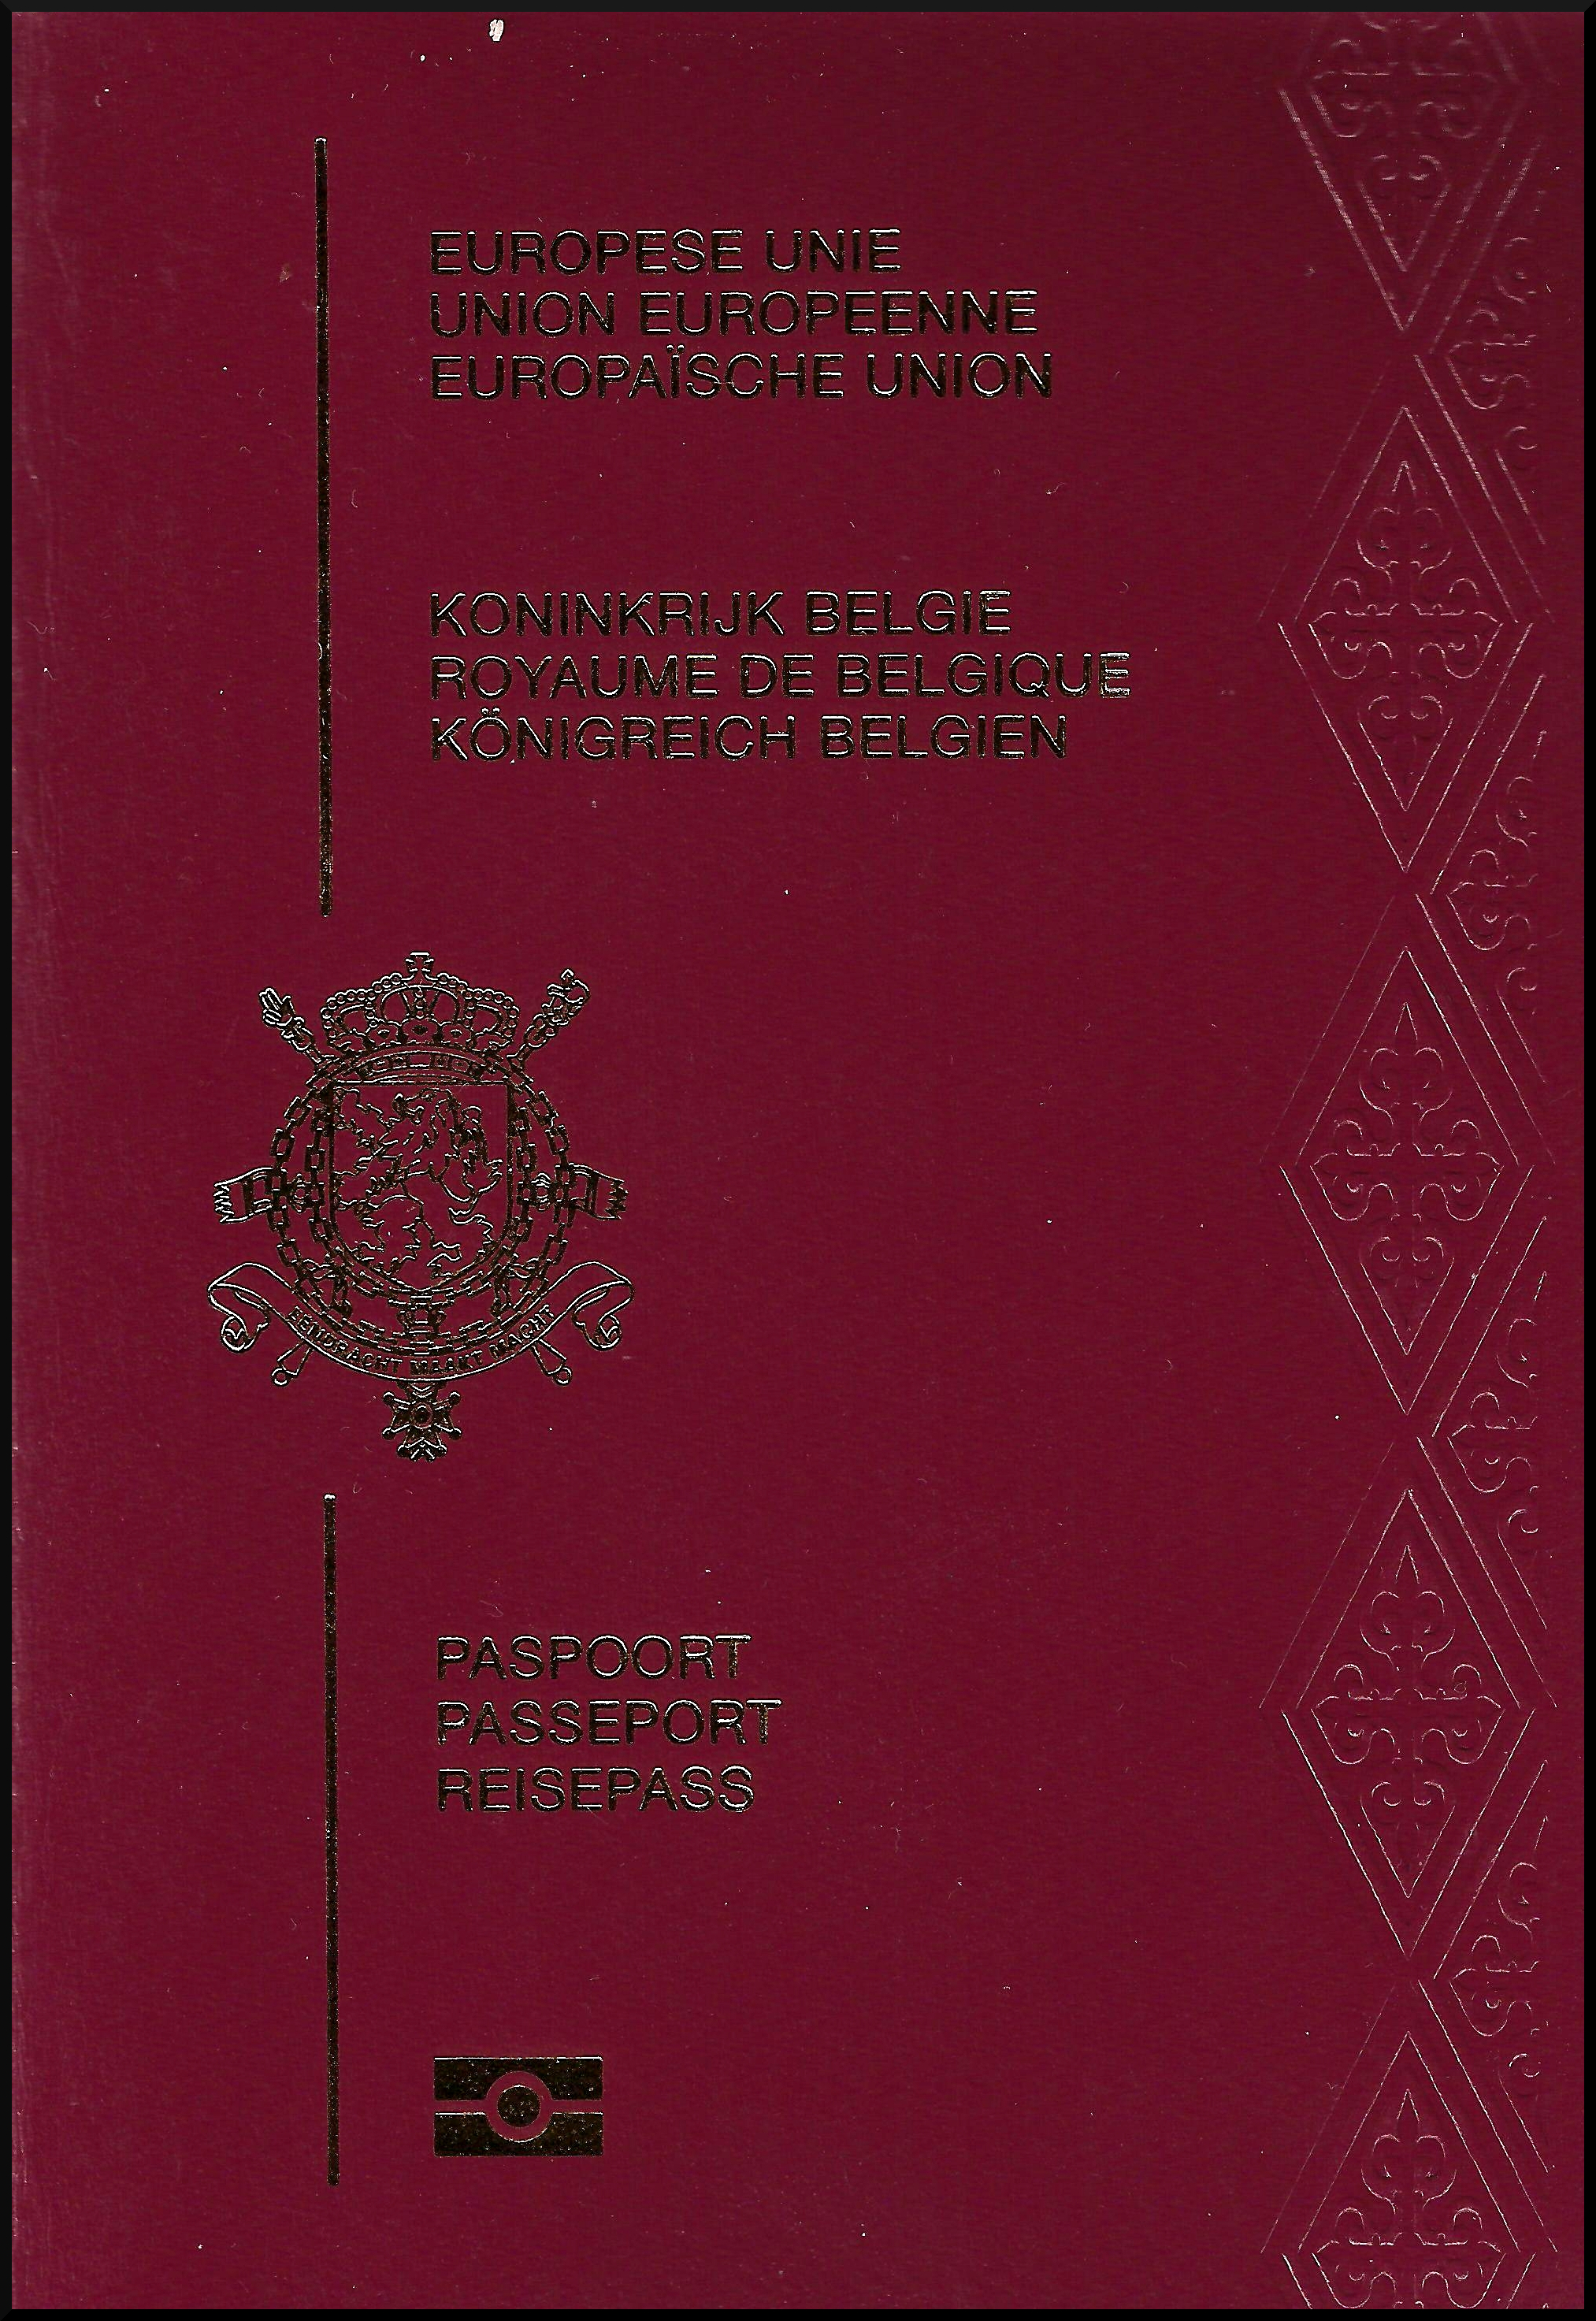 Belgian Passport